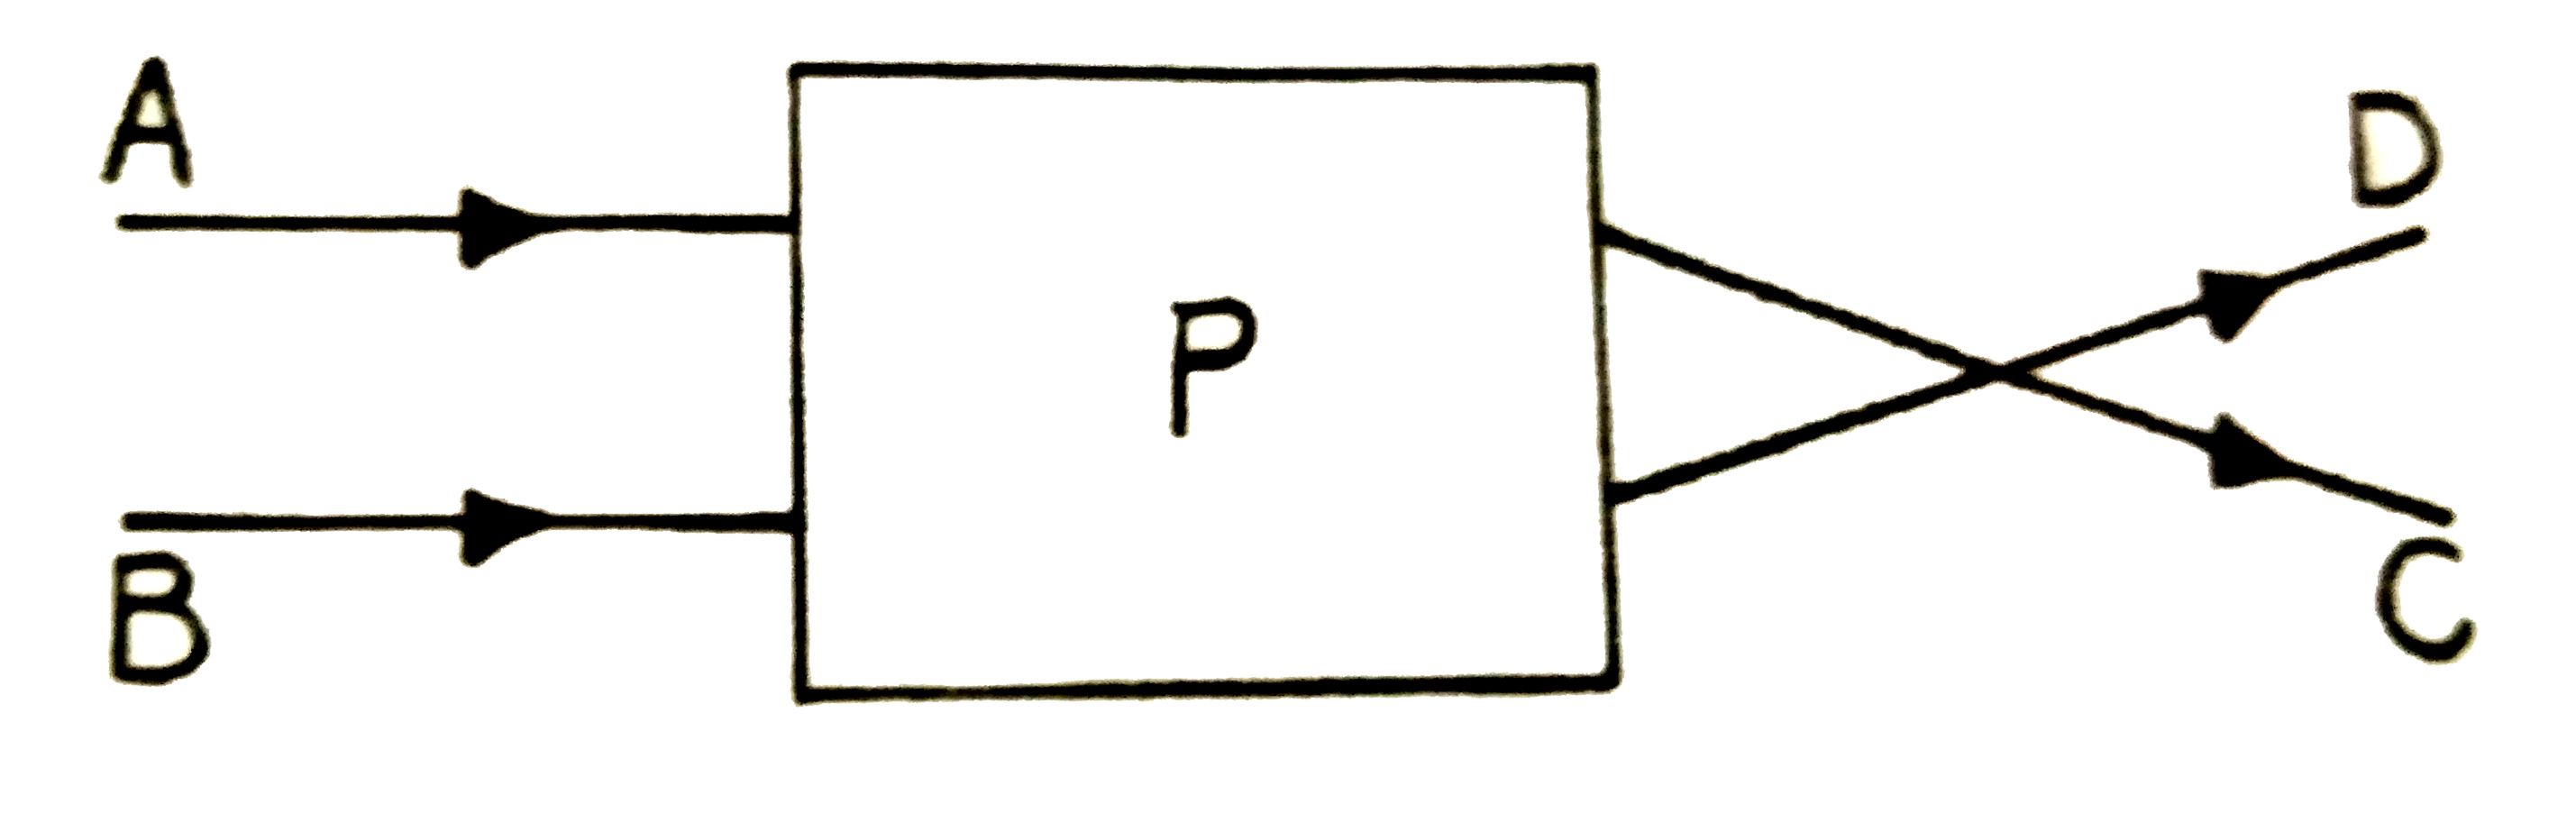 संलग्न चित्र में आयत P एक प्रकाशित-अवयव है। पर आपतित समान्तर किरणे A, B तथा निर्गत किरणे C, D है। प्रकाशित अवयव P है-